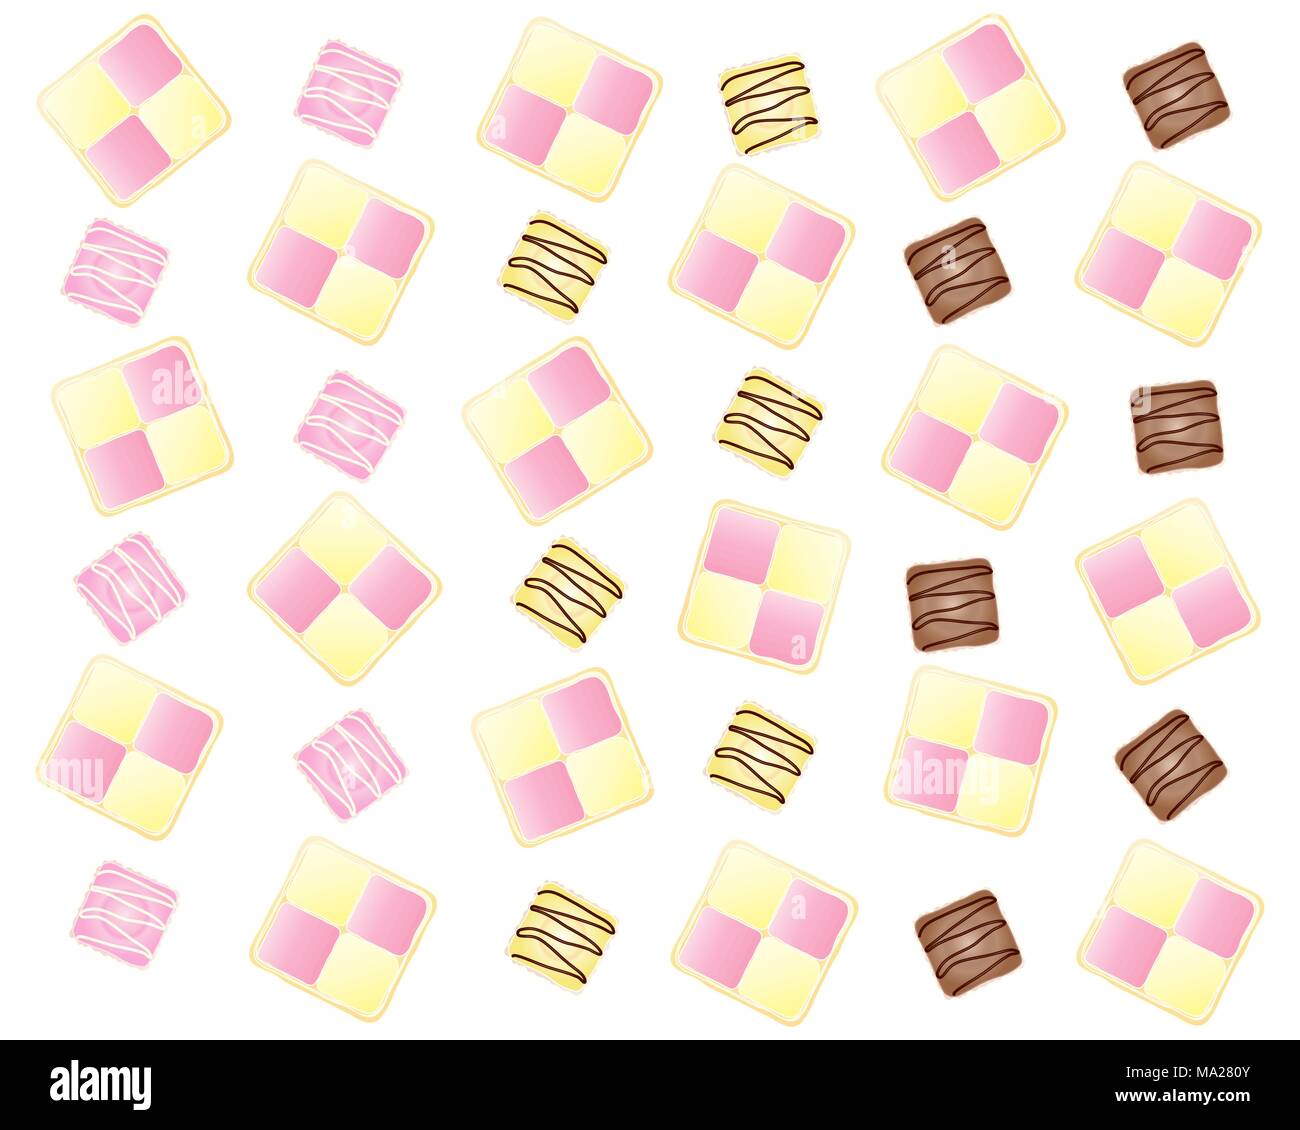 Une illustration d'une conception abstraite avec tranches de gâteau battenburg et fantaisies français dans le cadre d'une mise en page sur un fond blanc Illustration de Vecteur